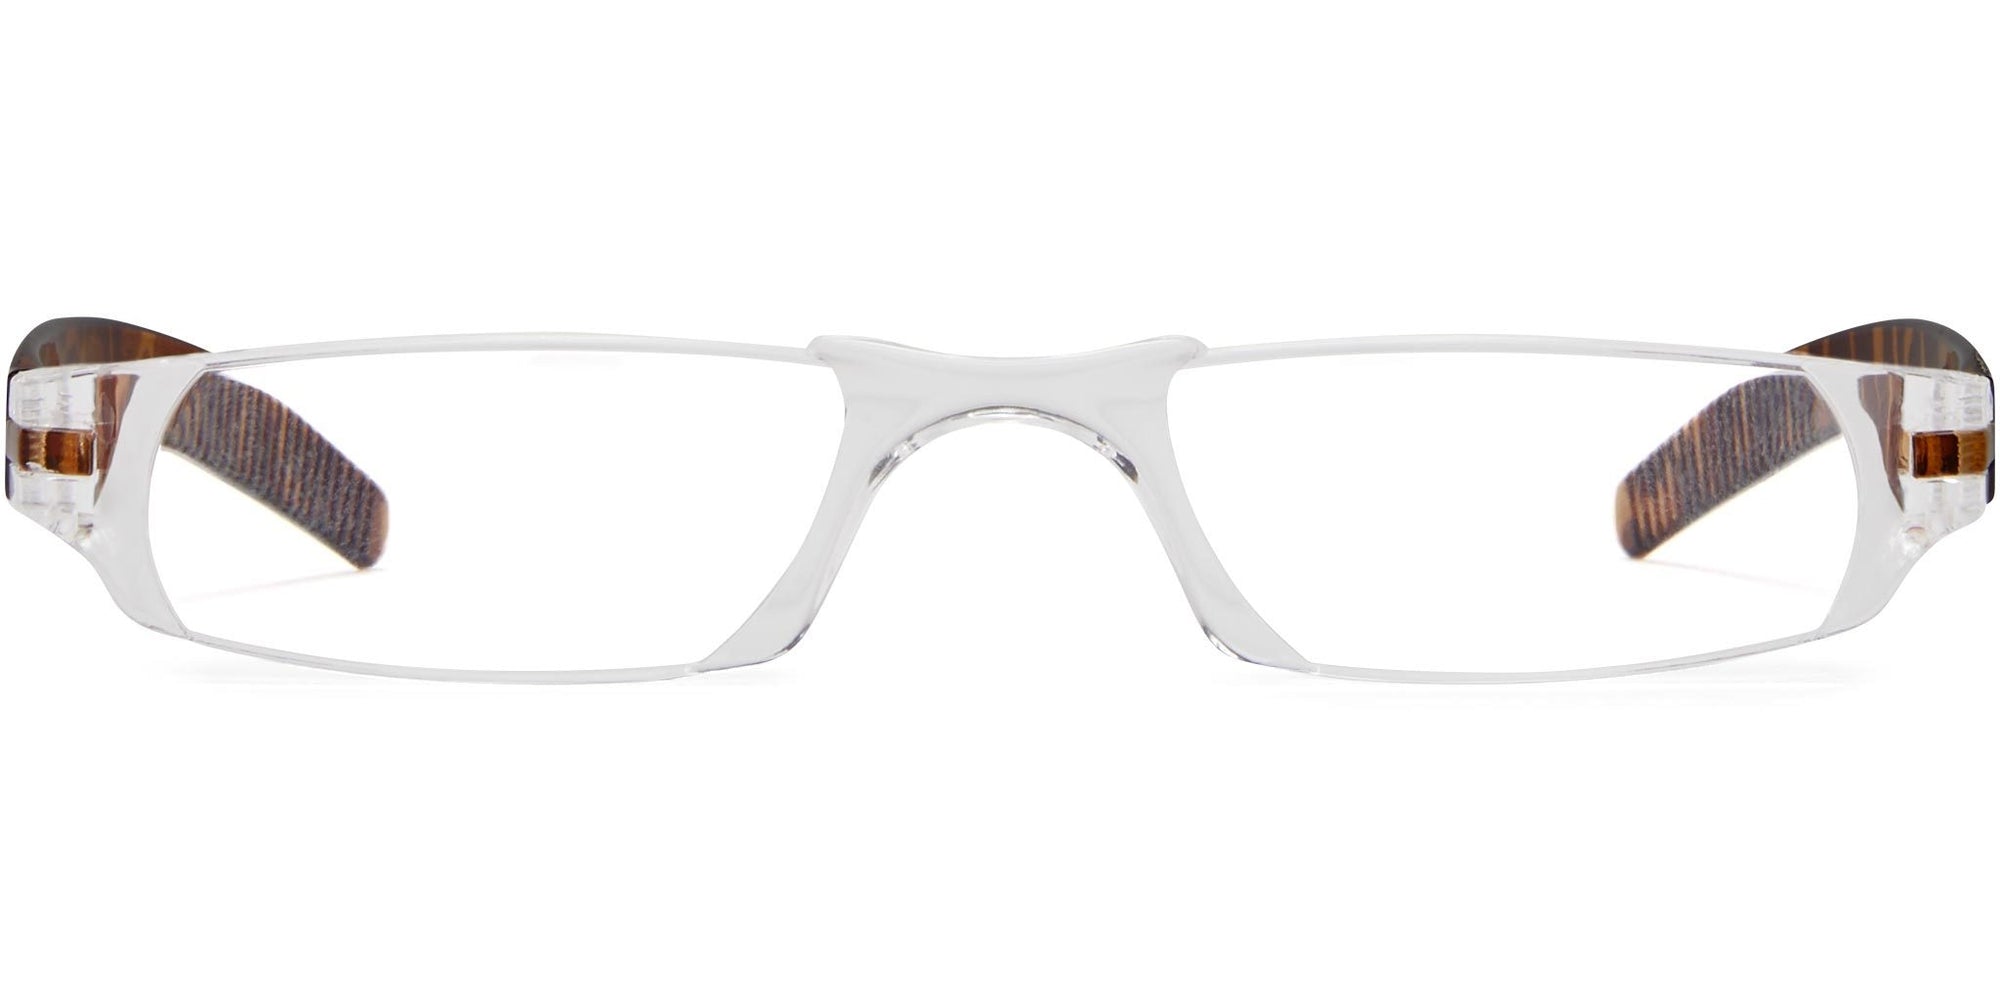 Stylish Reading Glasses for Men - Men's Readers